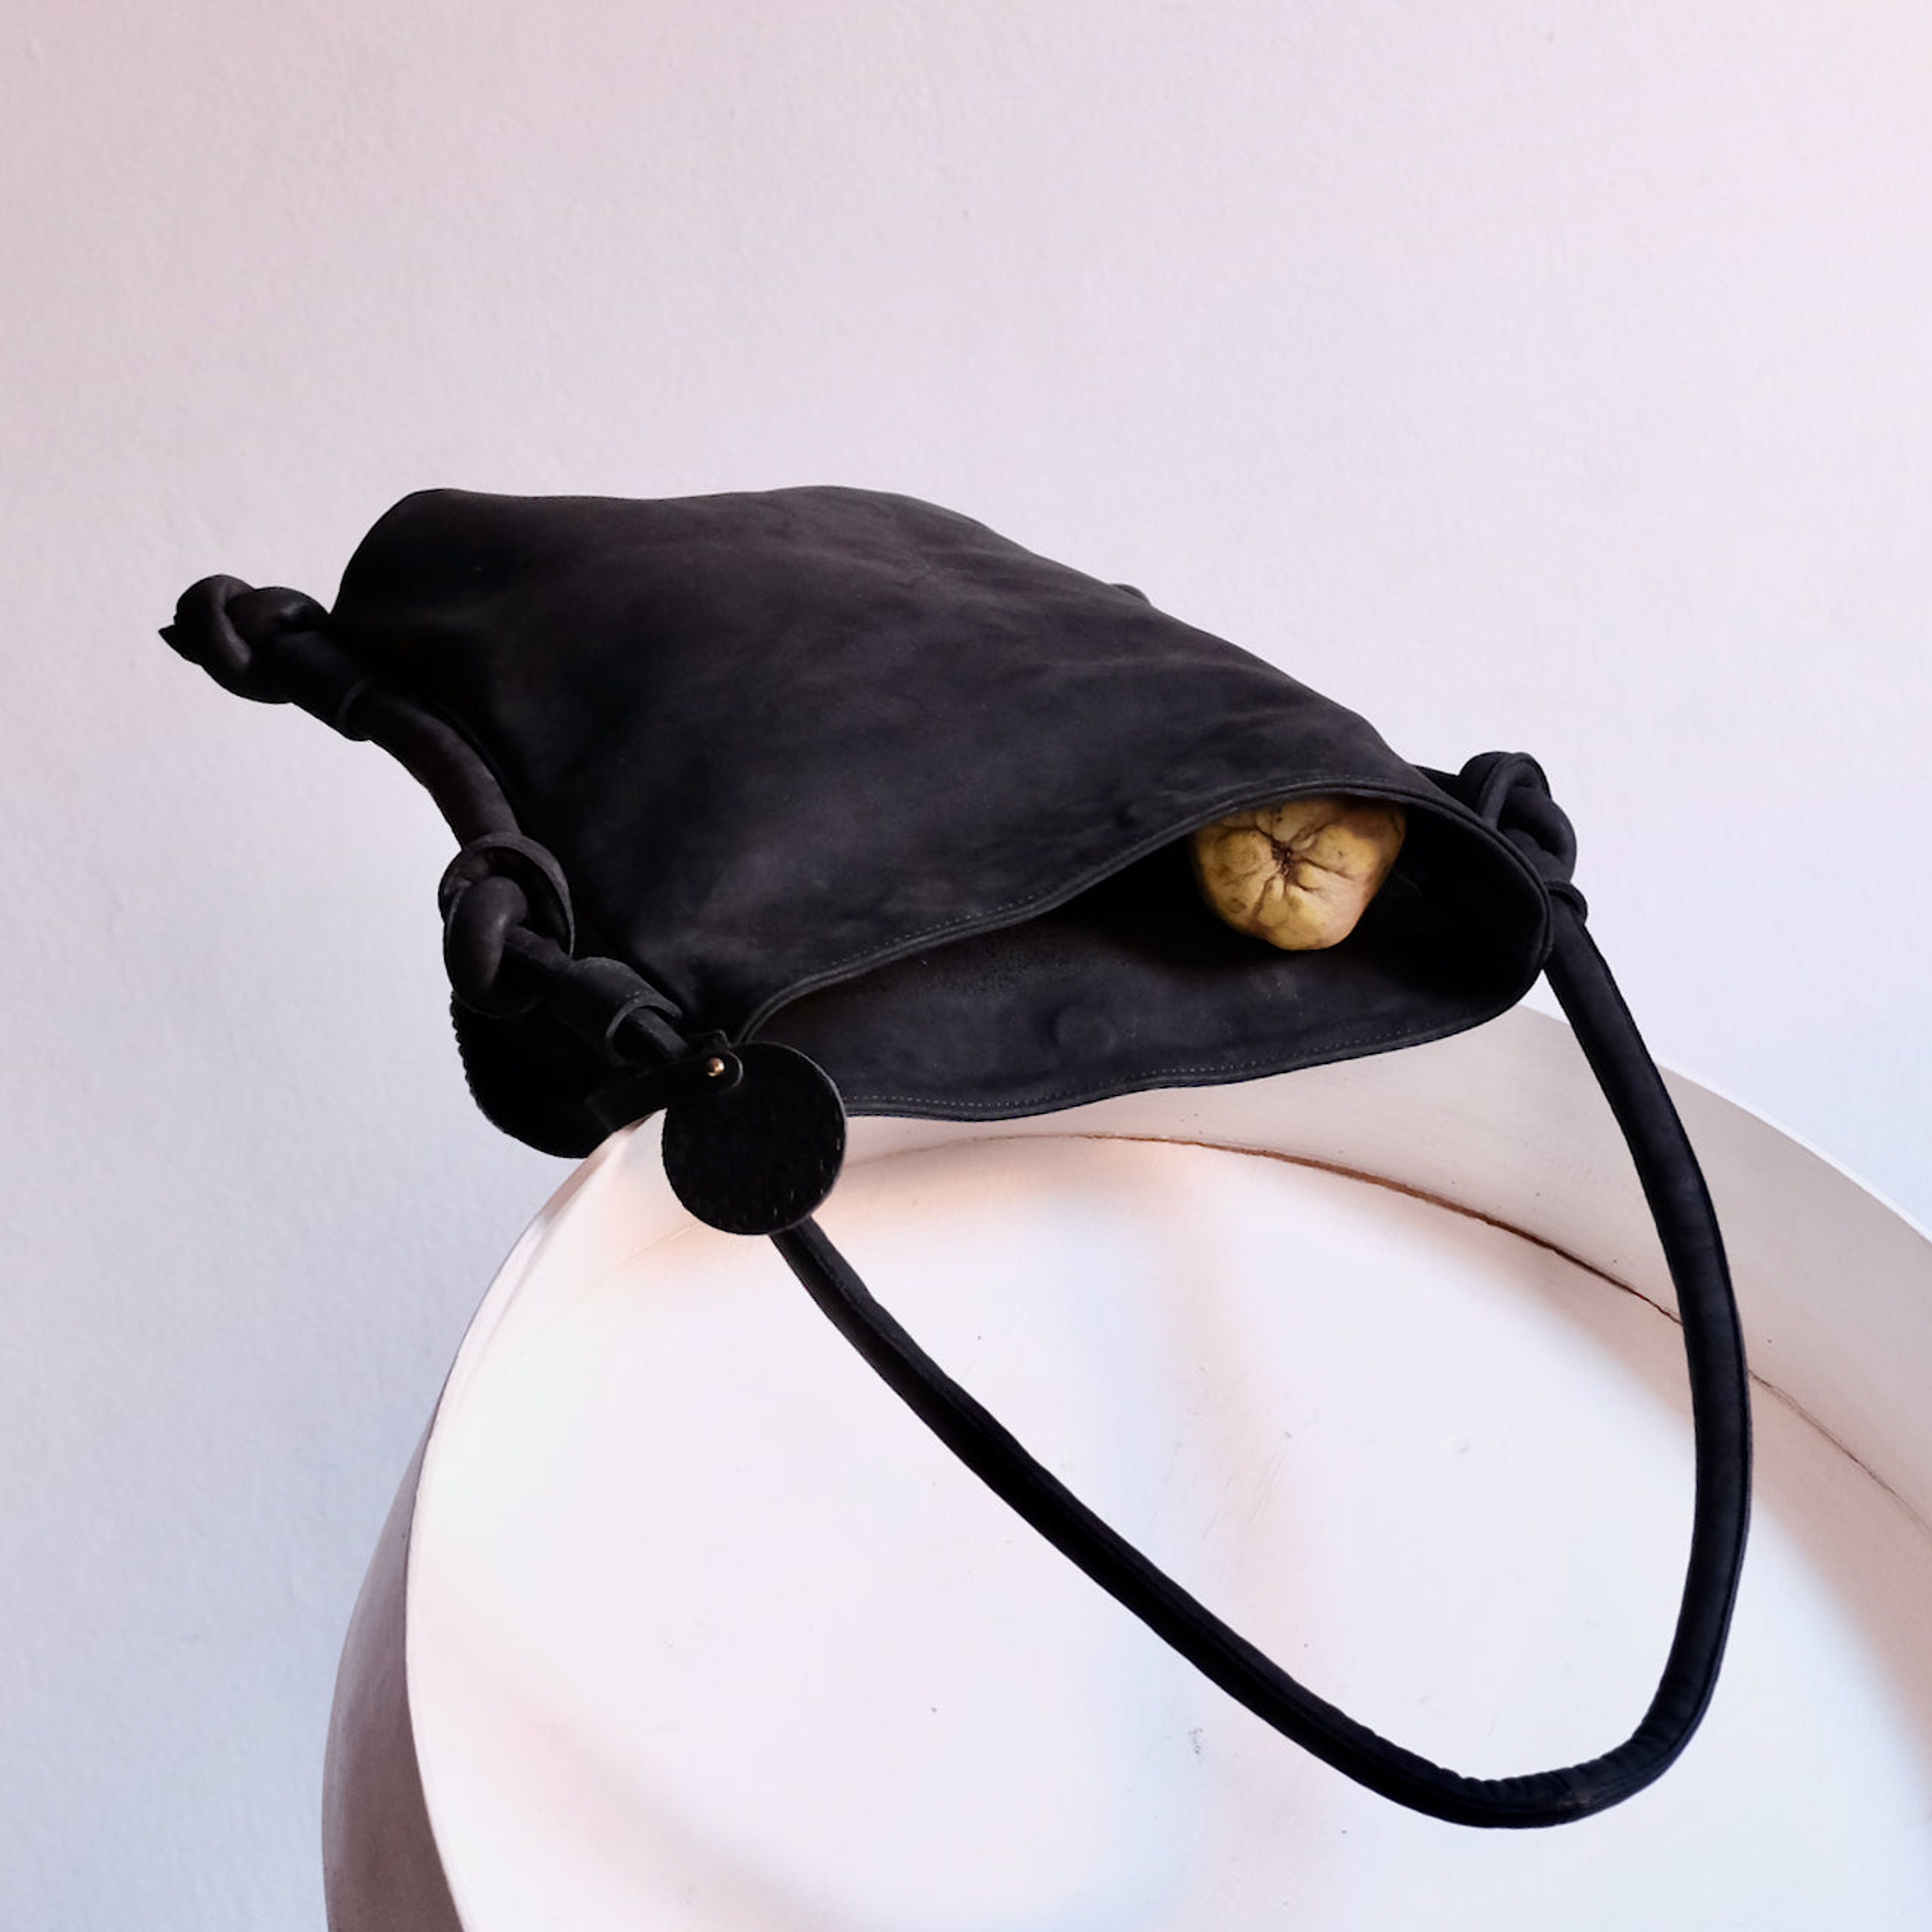 Hayat Backpack / Shoulder Bag - Black